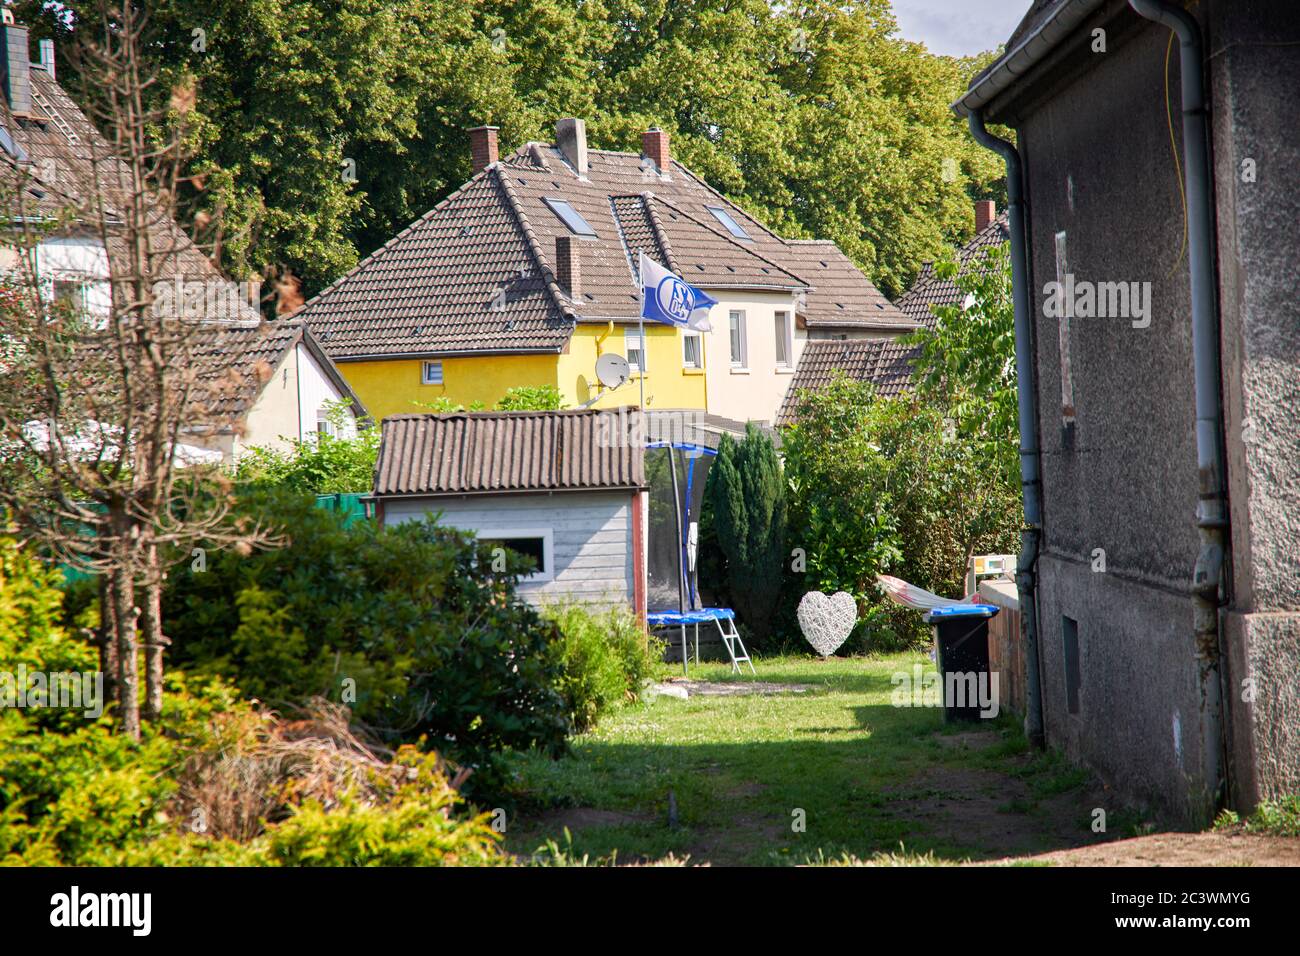 Bergarbeitersiedlung a Gelsenkirchen Hassel. In einam Garten hinter einem Bergarbeiter Haus weht die Flagge von dem Fussballverein Schalke 04. Foto Stock